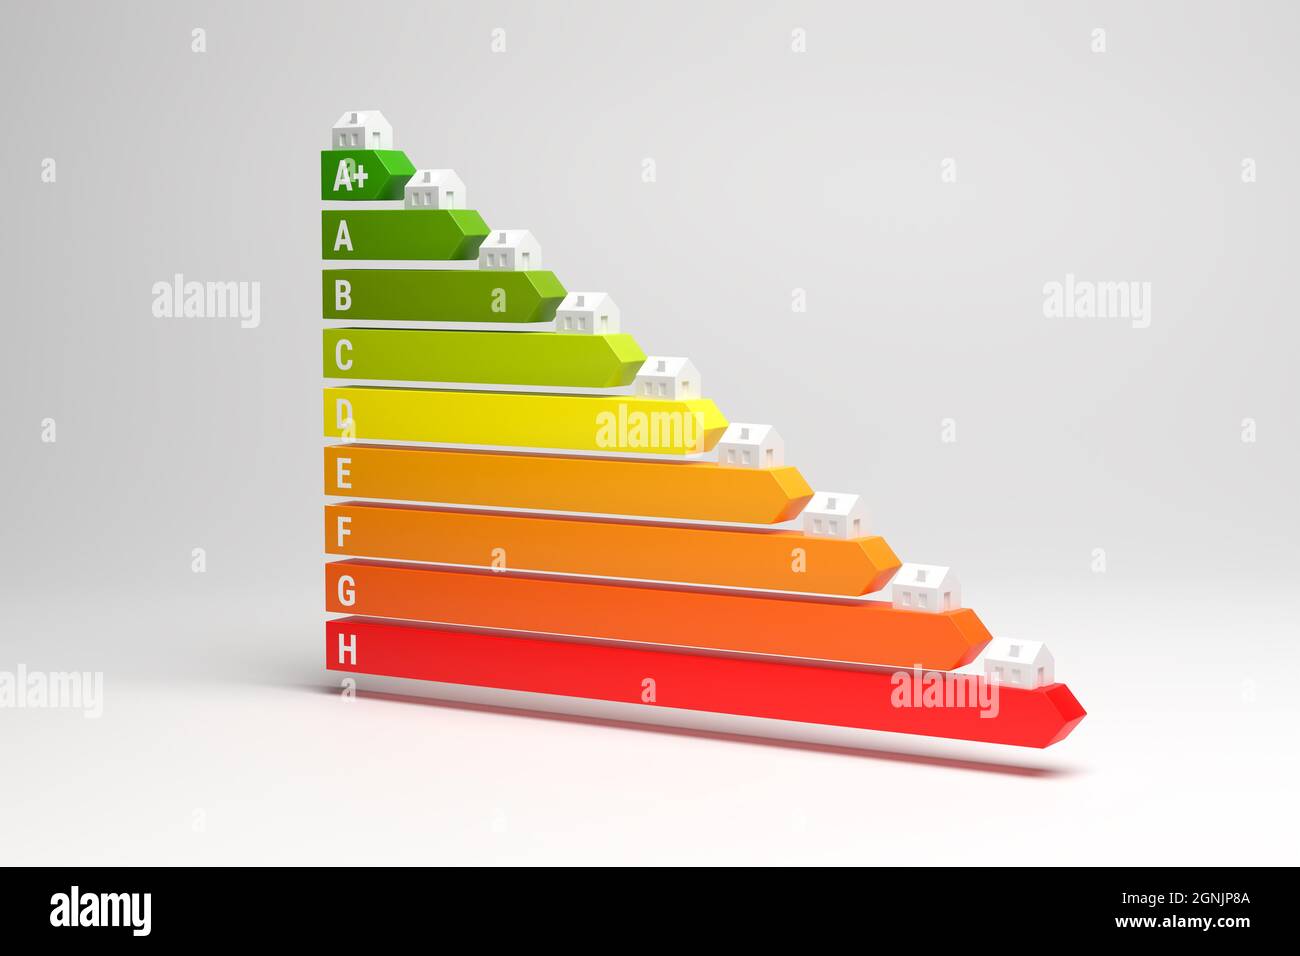 Energieetiketten für Häuser in Deutschland (Energieeffizienzklassen A+ bis H) Konzept. Modellhäuser auf den Pfeilen des Energieetiketts. Stockfoto